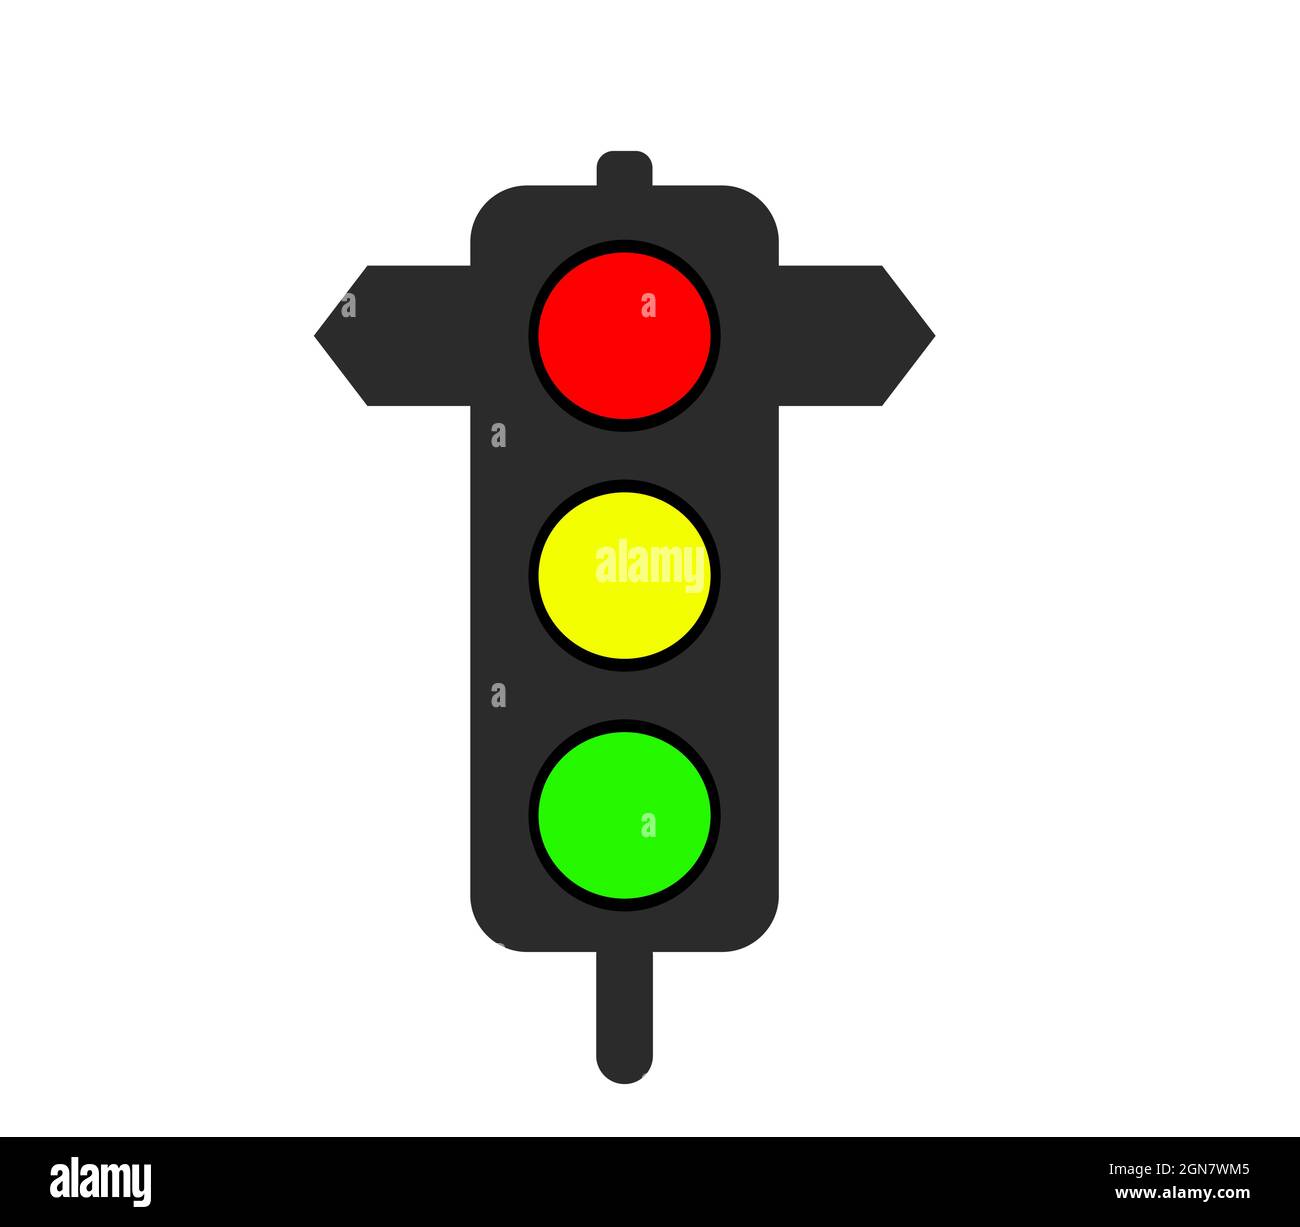 Icono de semáforo, símbolo de señal de tráfico rojo amarillo verde Ilustración del Vector